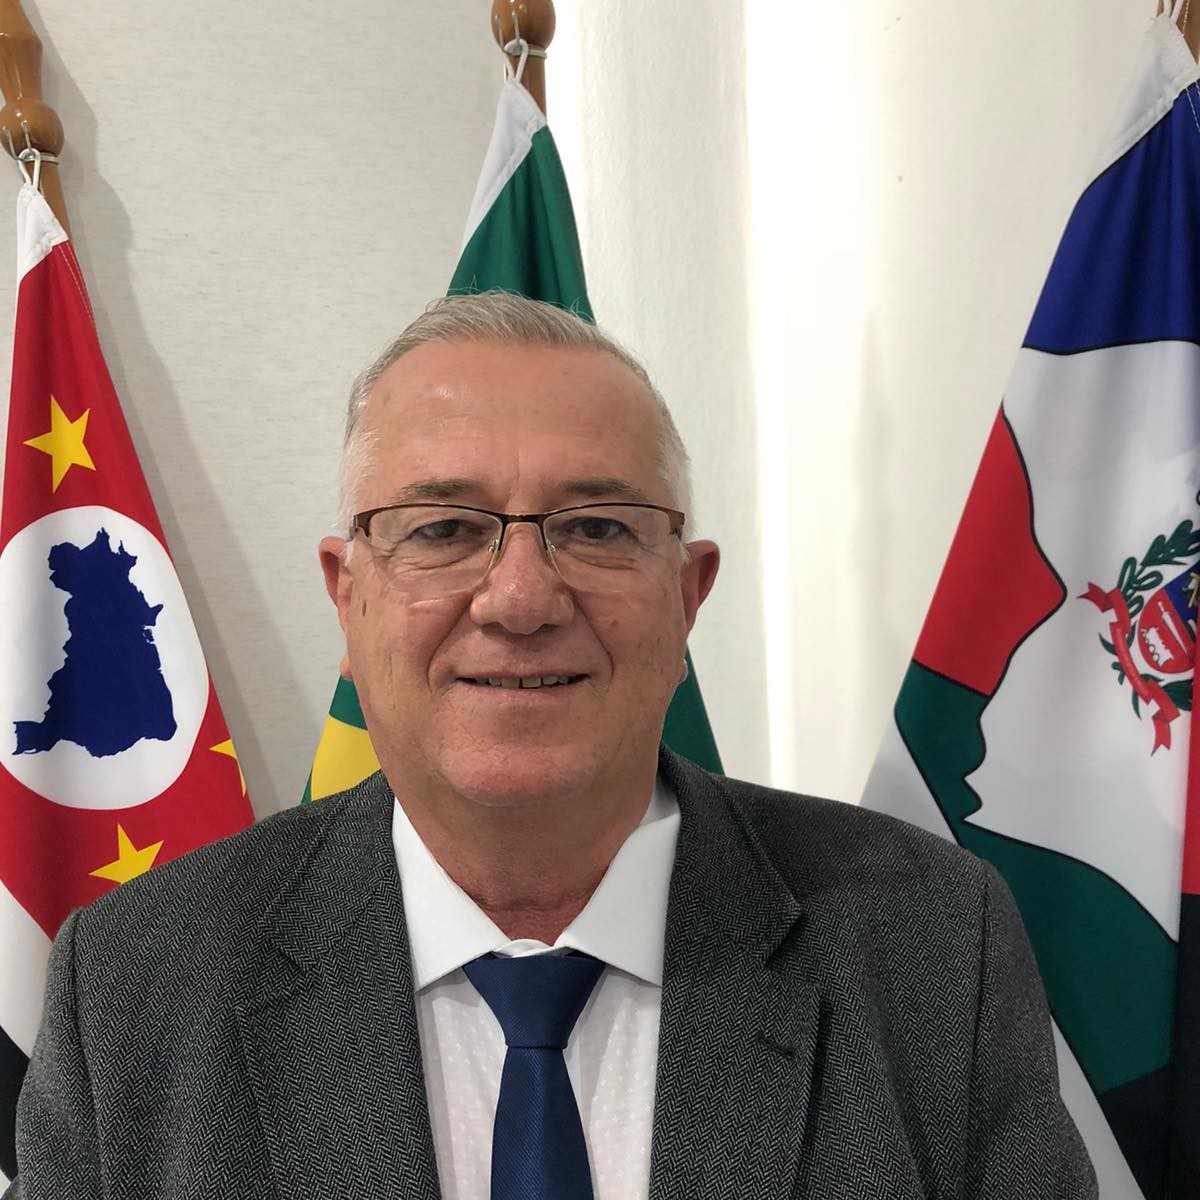 Vereadores de Cachoeira Paulista aprovam cassação do prefeito Antônio Carlos Mineiro (Avante)